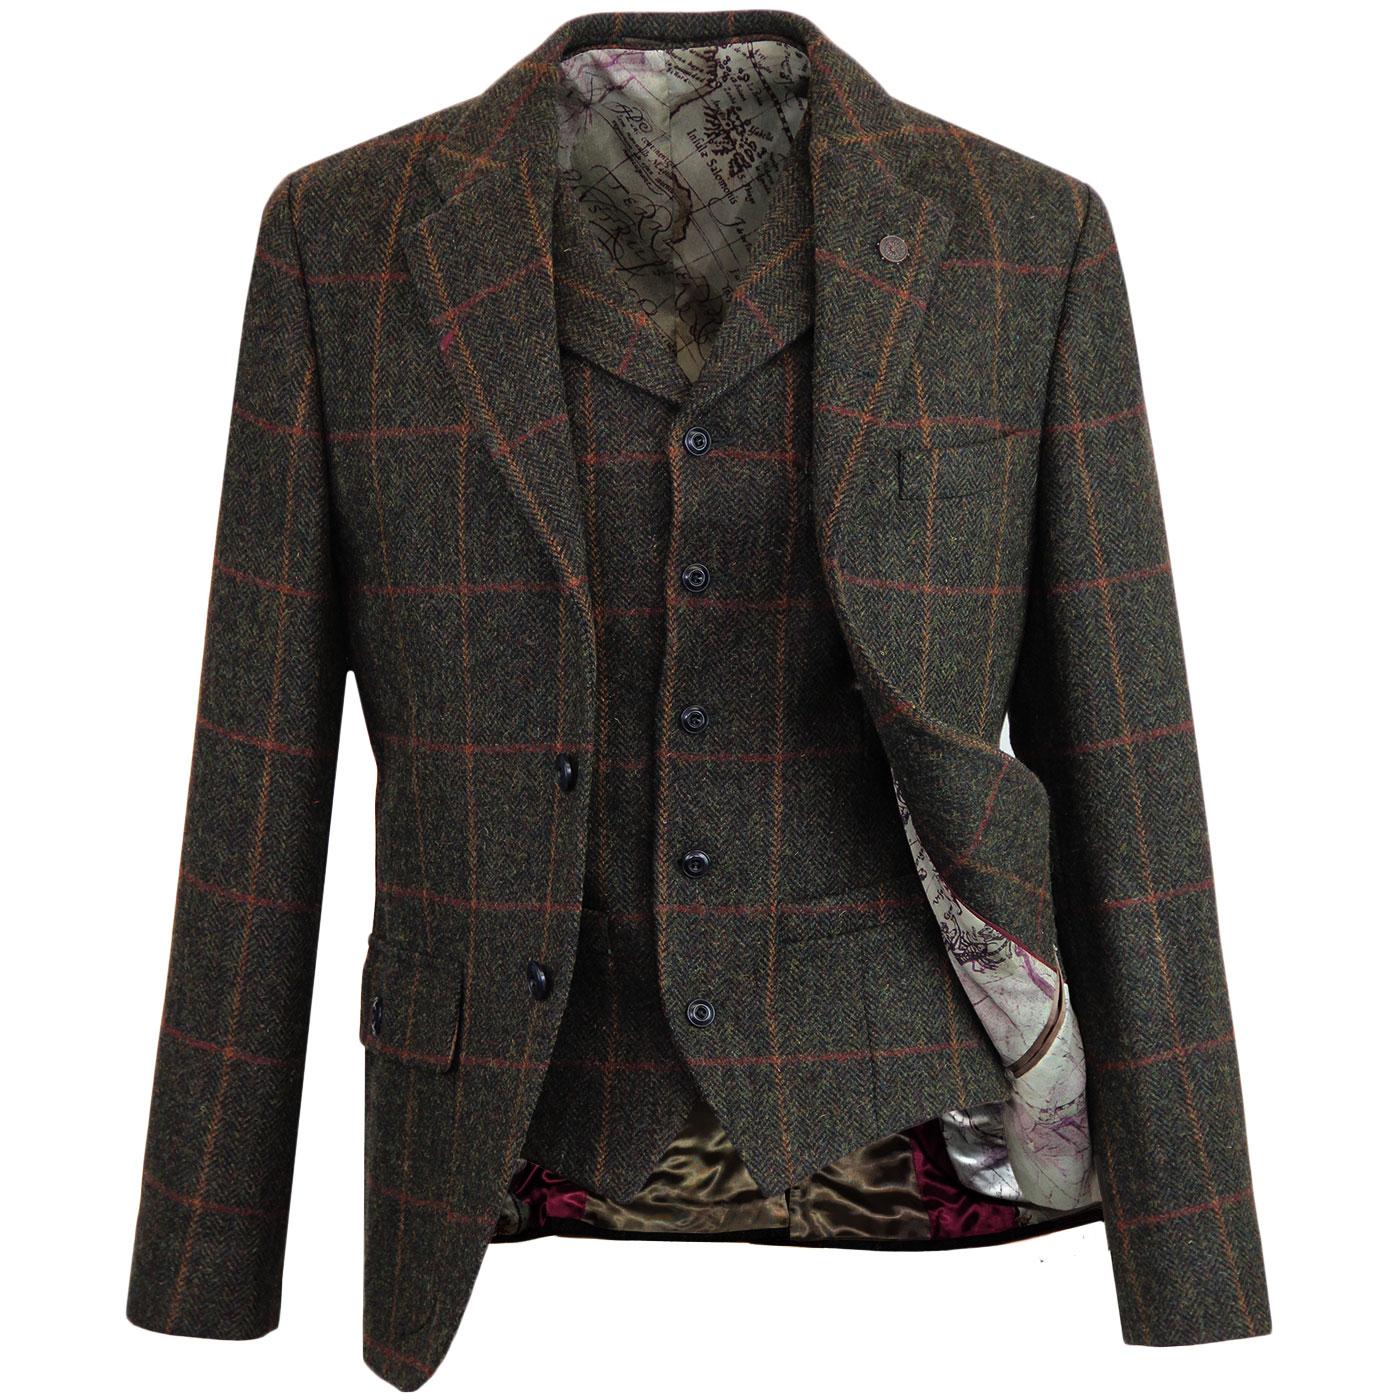 GIBSON LONDON Herringbone Check Blazer & Waistcoat